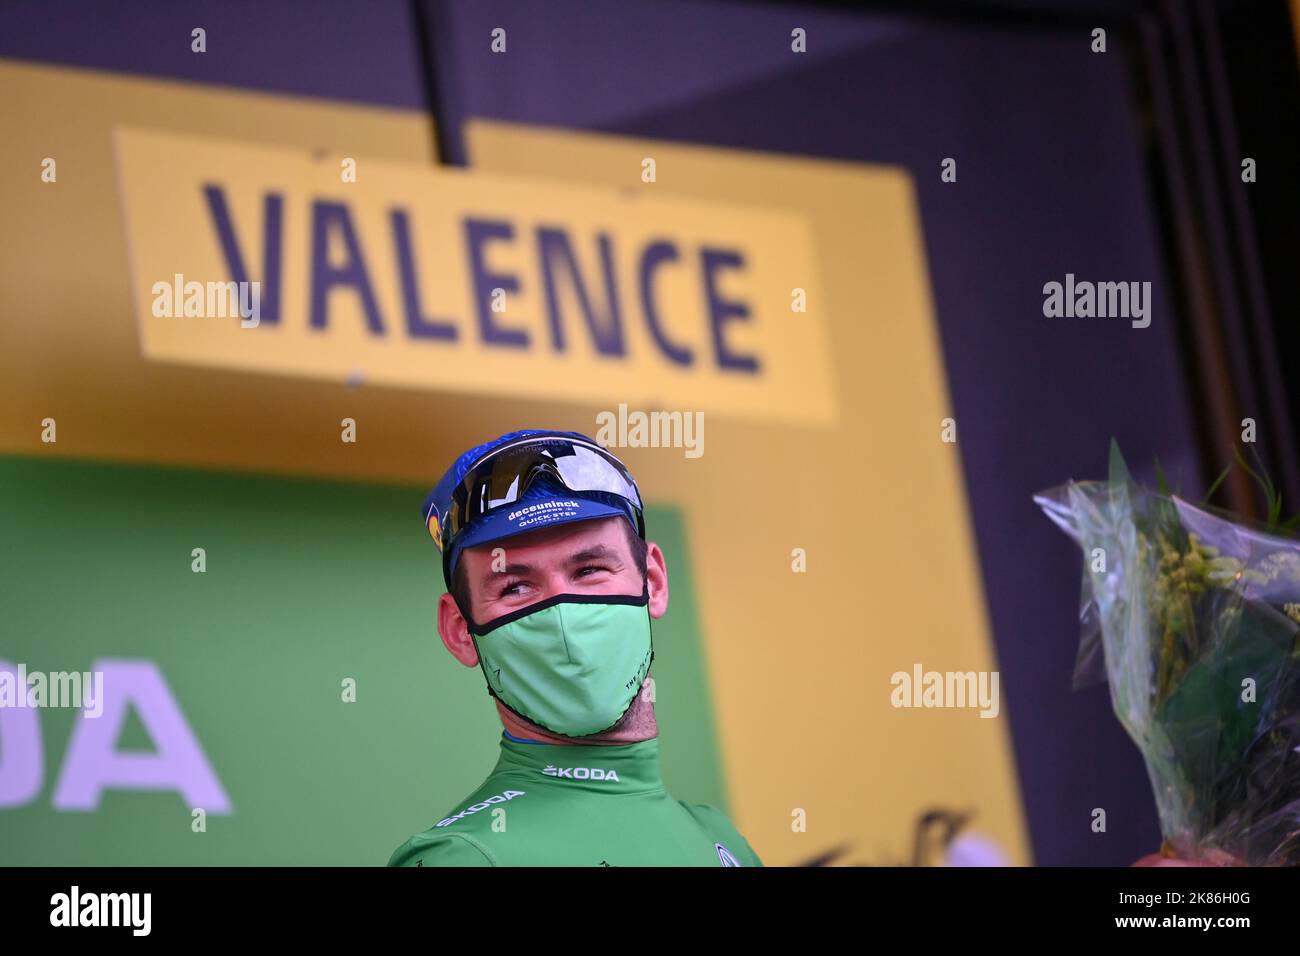 Mark Cavendish (GBR) von DECEUNINCK - QUICK - STEP behält seine Führung in der Punktekategorie, nachdem er am Montag, 6.. Juli 2021, die Etappe im Sprint der Etappe 10 der Tour de France gewonnen hatte. Stockfoto